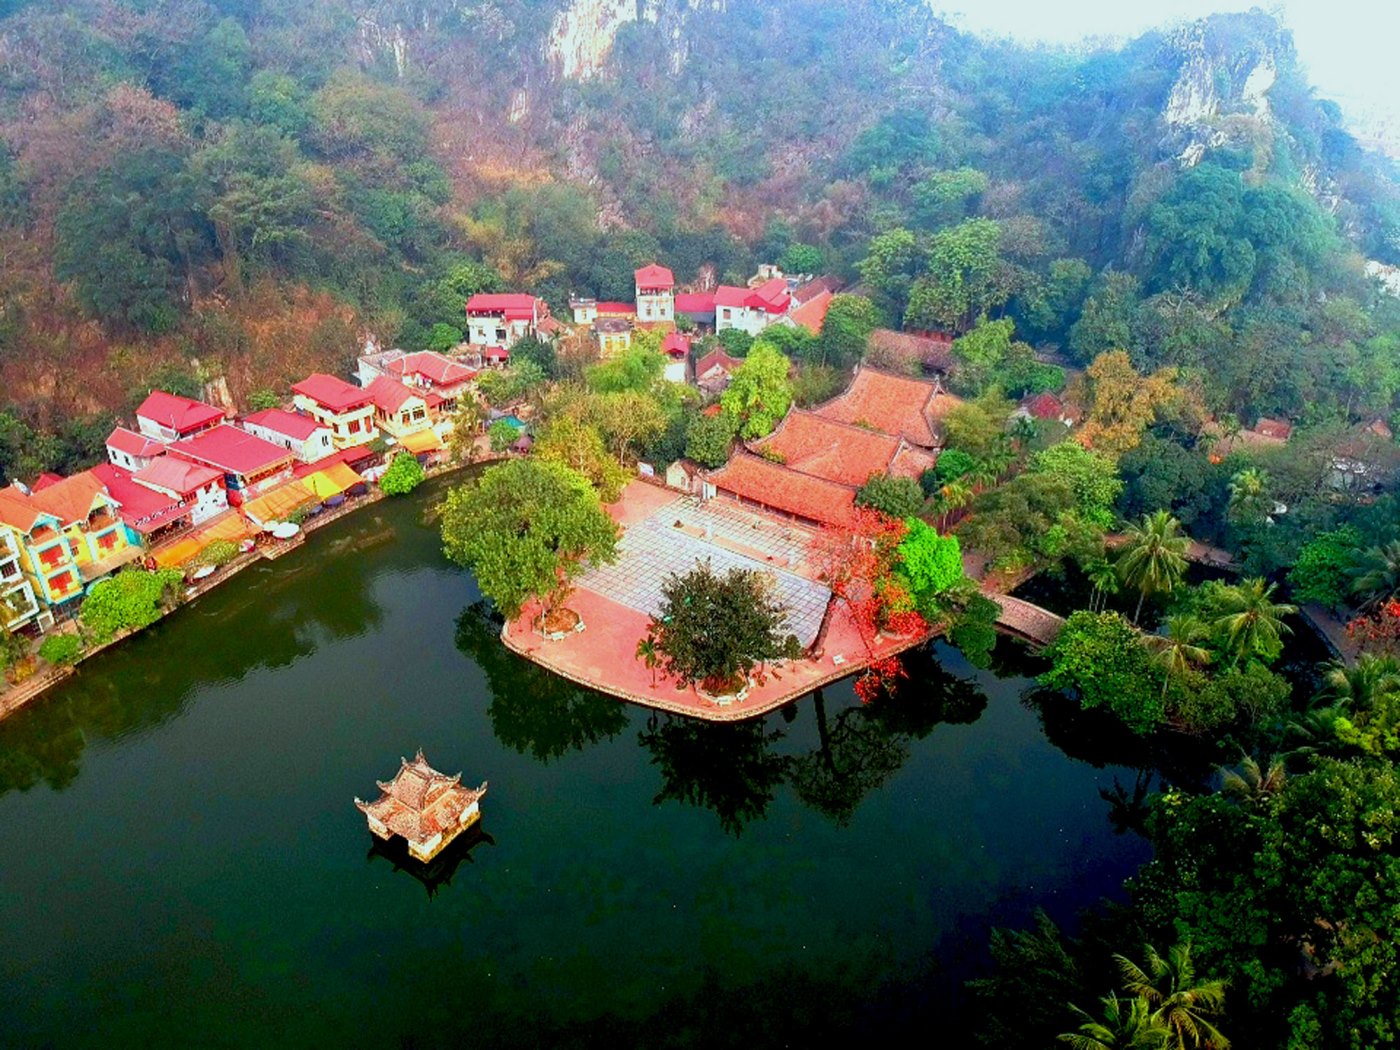 Toàn cảnh sân chùa, hồ nước, Thủy Đình và những cây hoa gạo qua ống kính flycam như một bức tranh thủy mặc hữu tình.